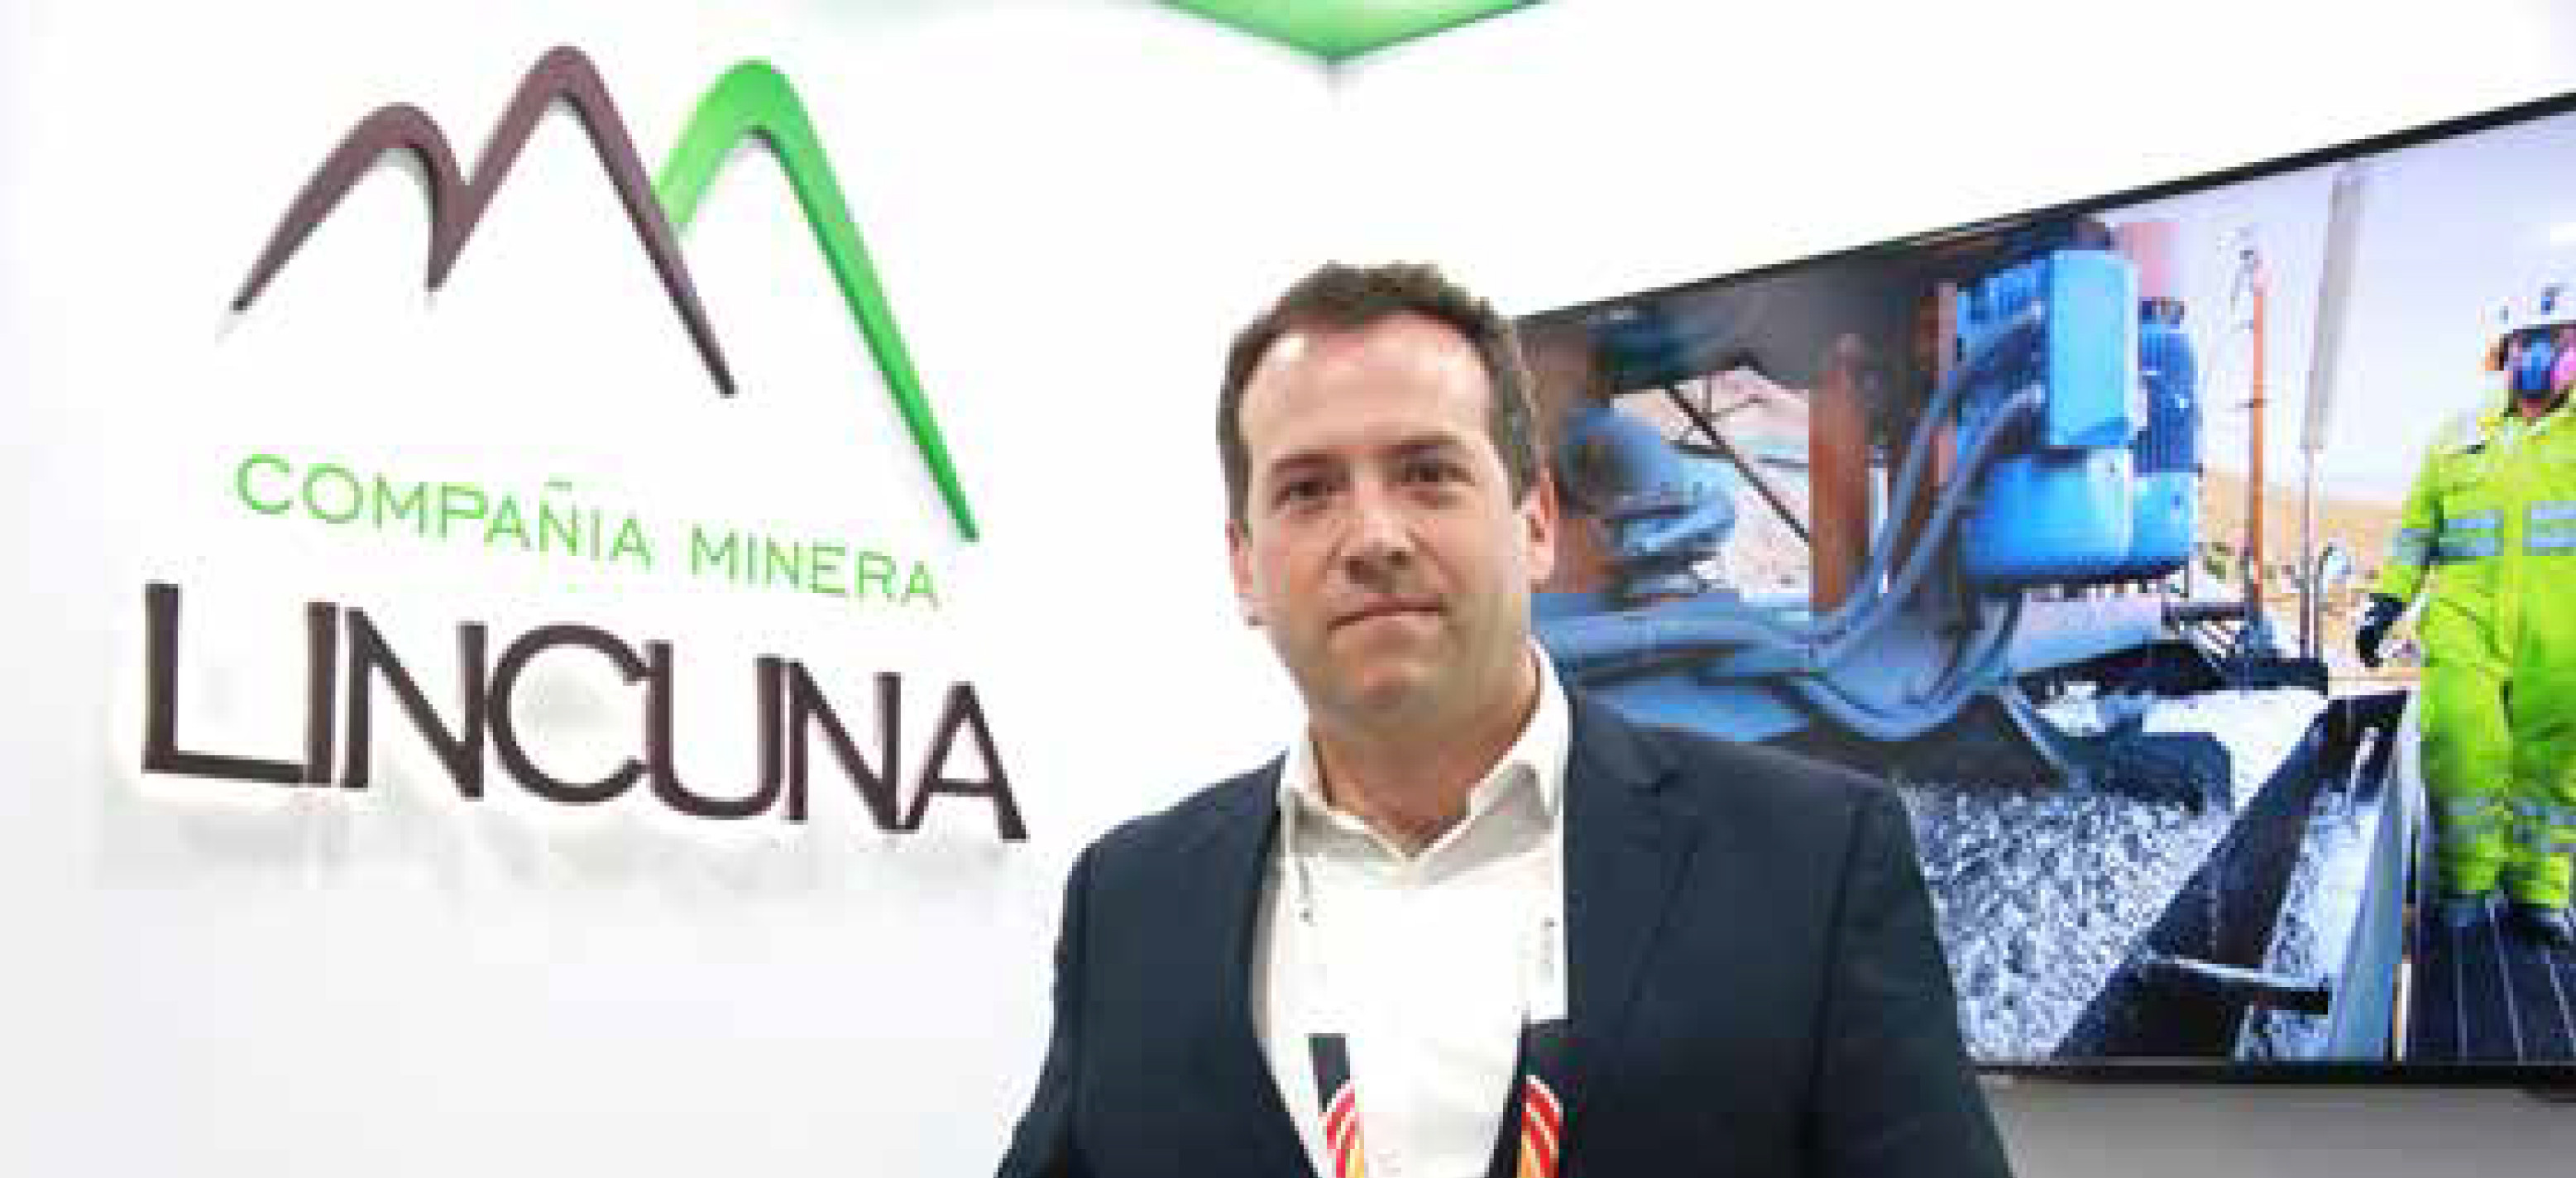 Miguel Sánchez, gerente de Lincuna: “Estimamos invertir US$ 50 millones en planta concentradora, presa de relaves y mina”